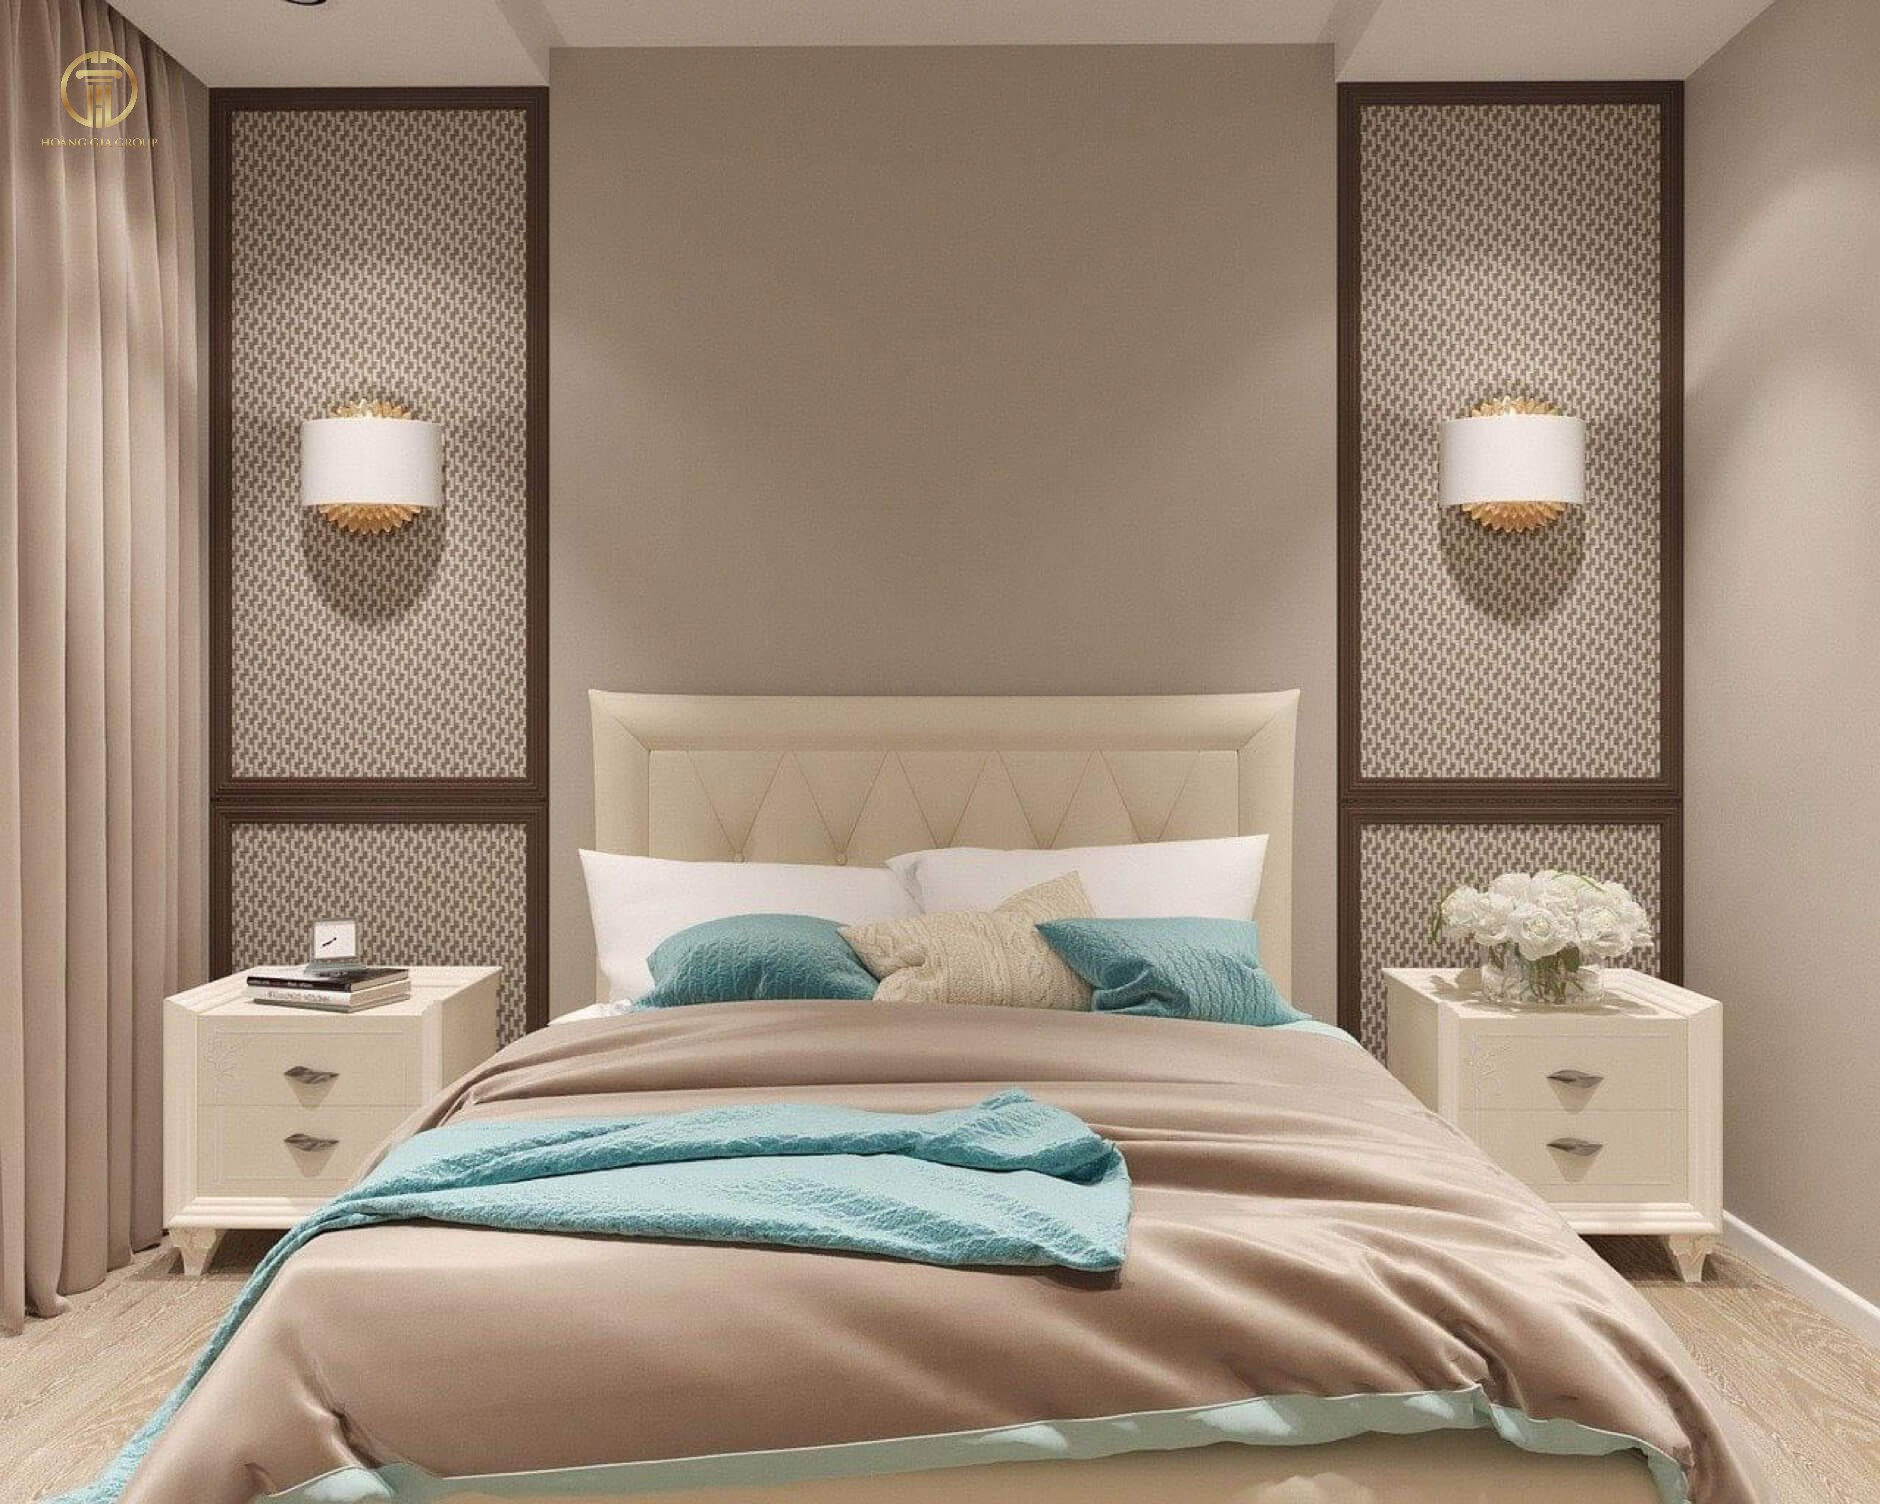 Thiết kế của chiếc giường làm điểm nhấn cho căn phòng thêm nổi bật